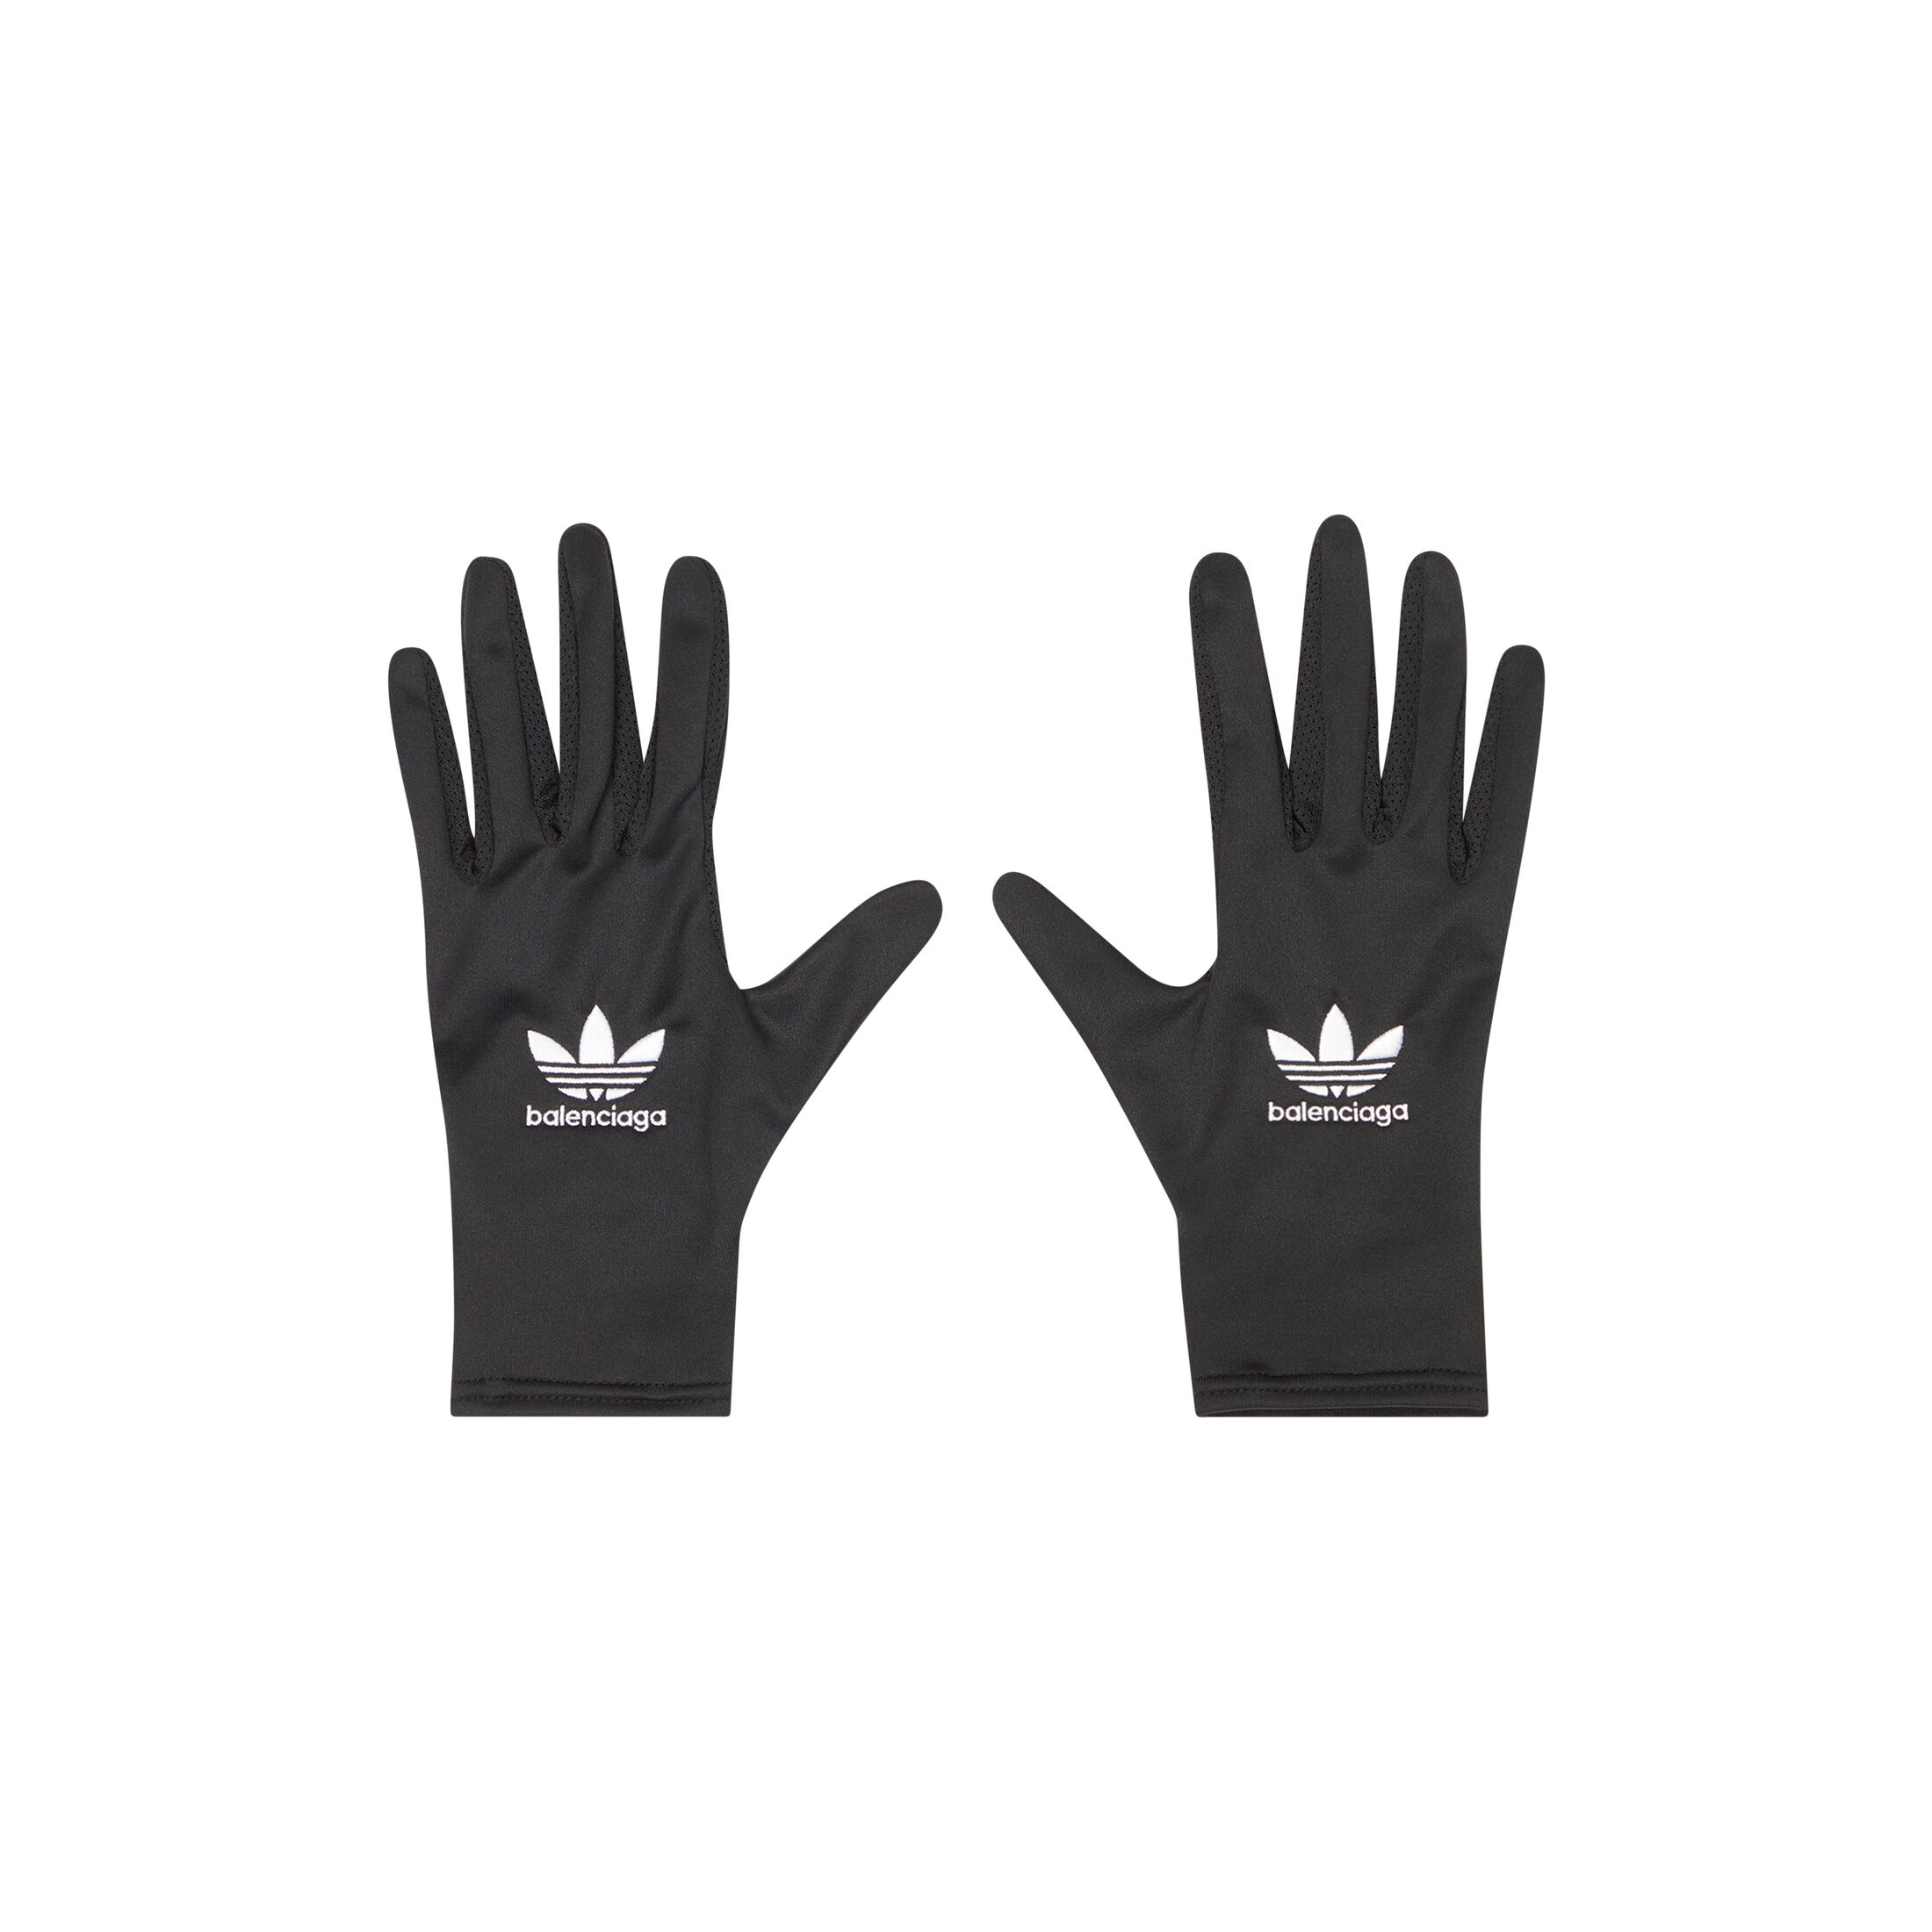 Balenciaga x adidas Gloves Black